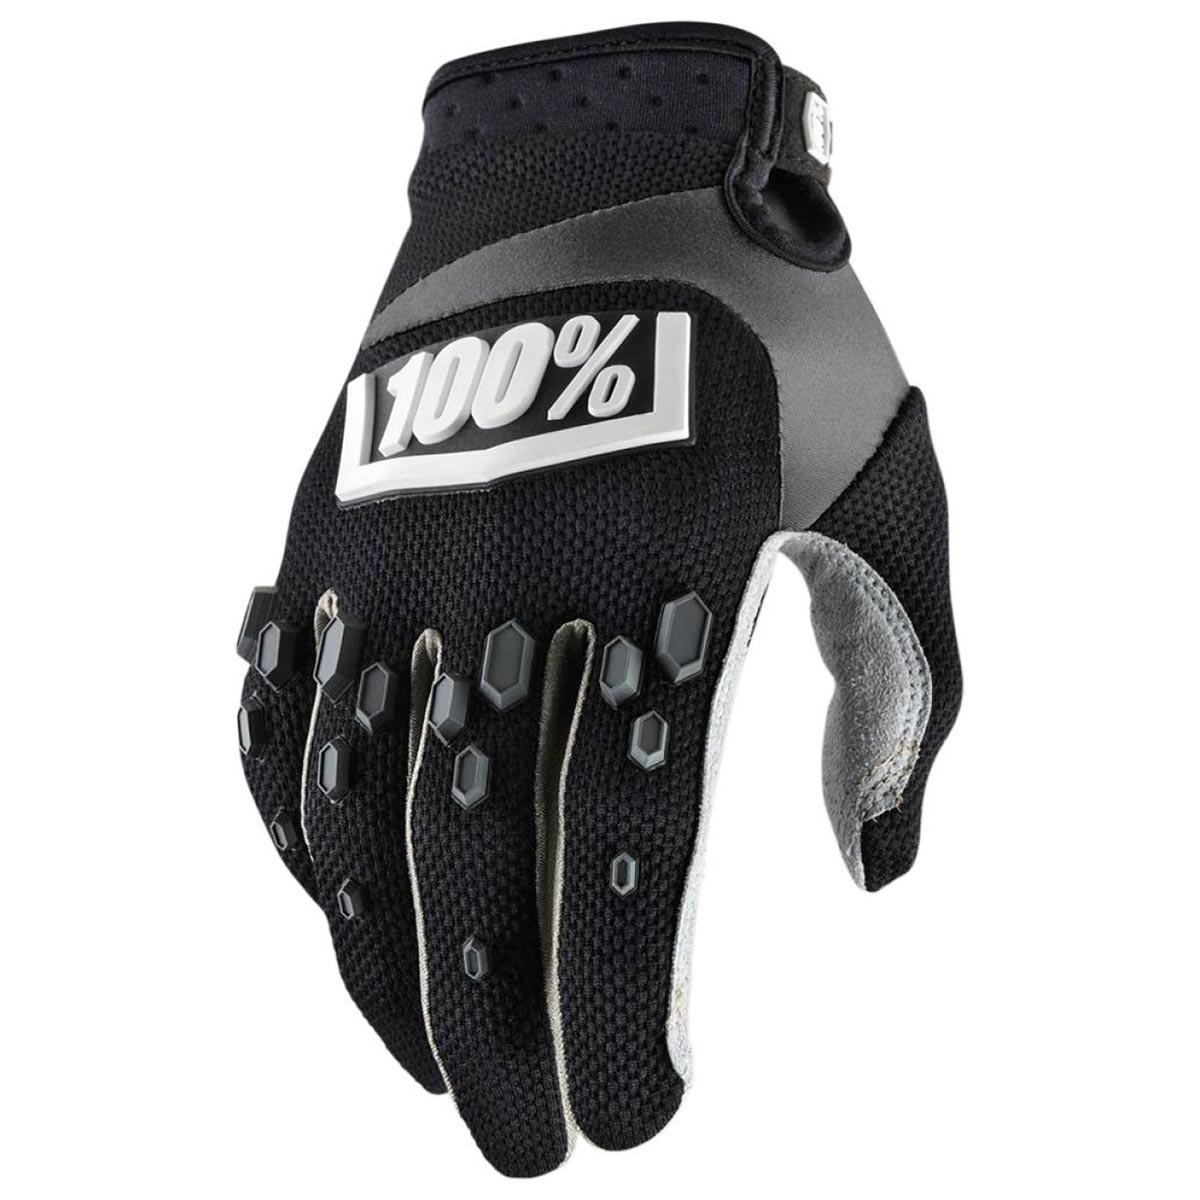 100% Kids Glove Airmatic Black